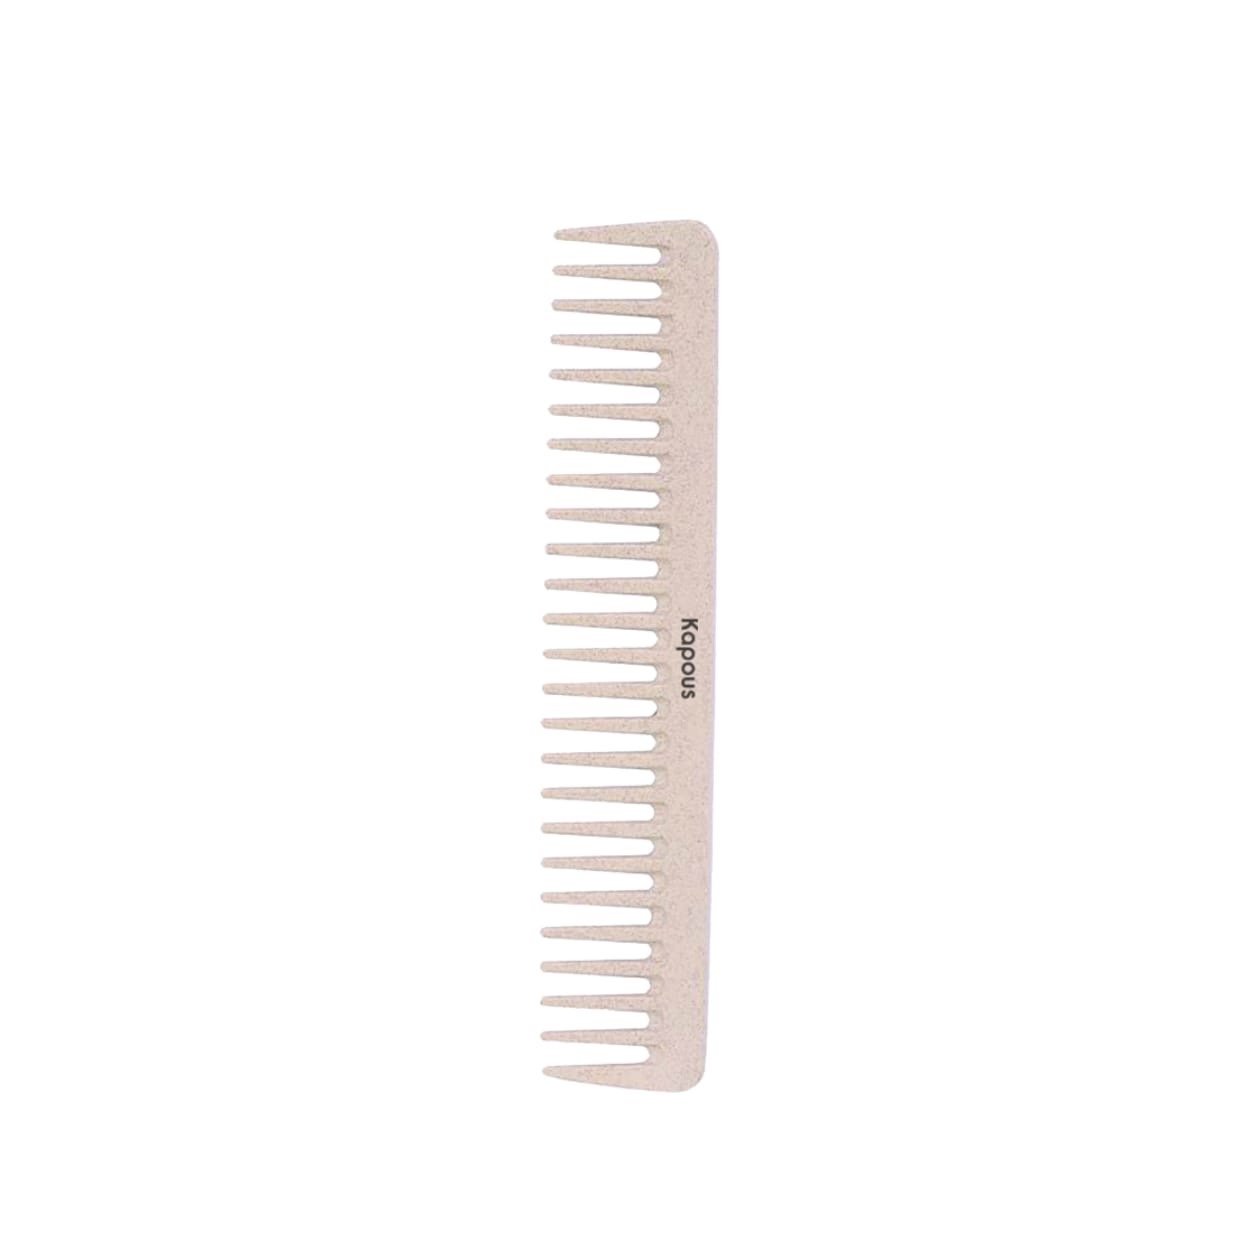 Расческа парикмахерская Plant fiber 183*40 мм, 1 шт.